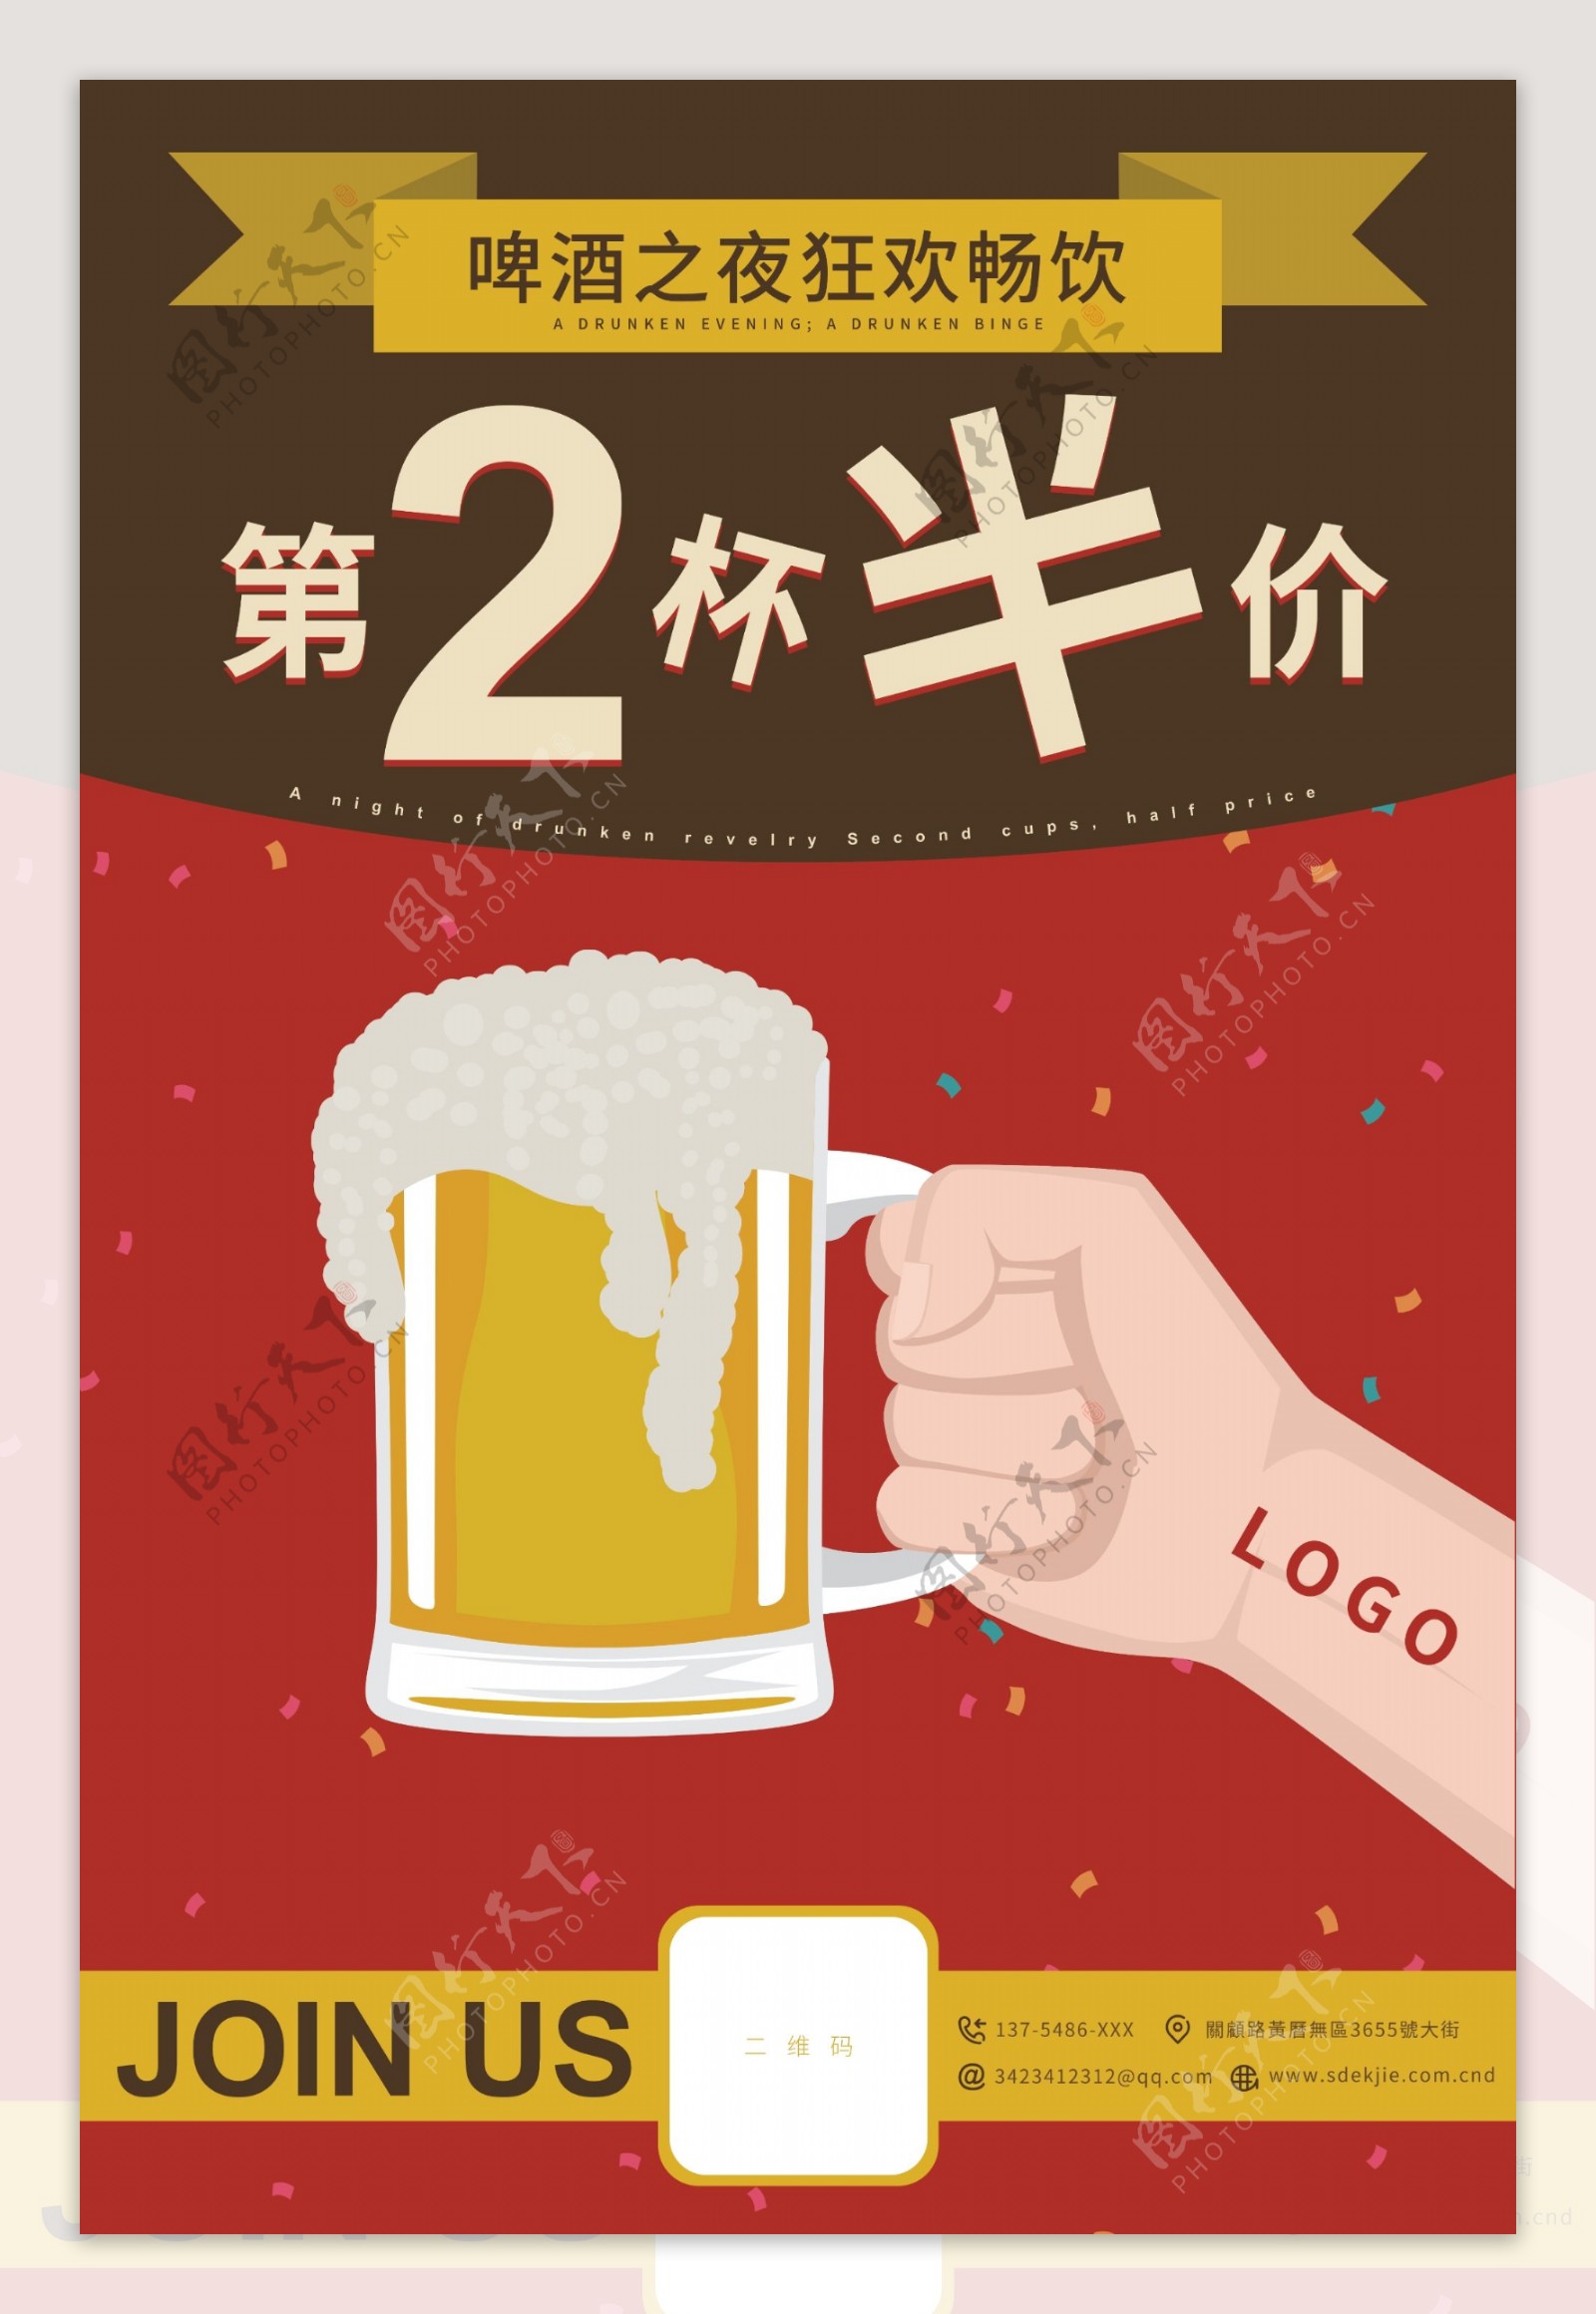 啤酒饮料第二杯半价促销海报设计